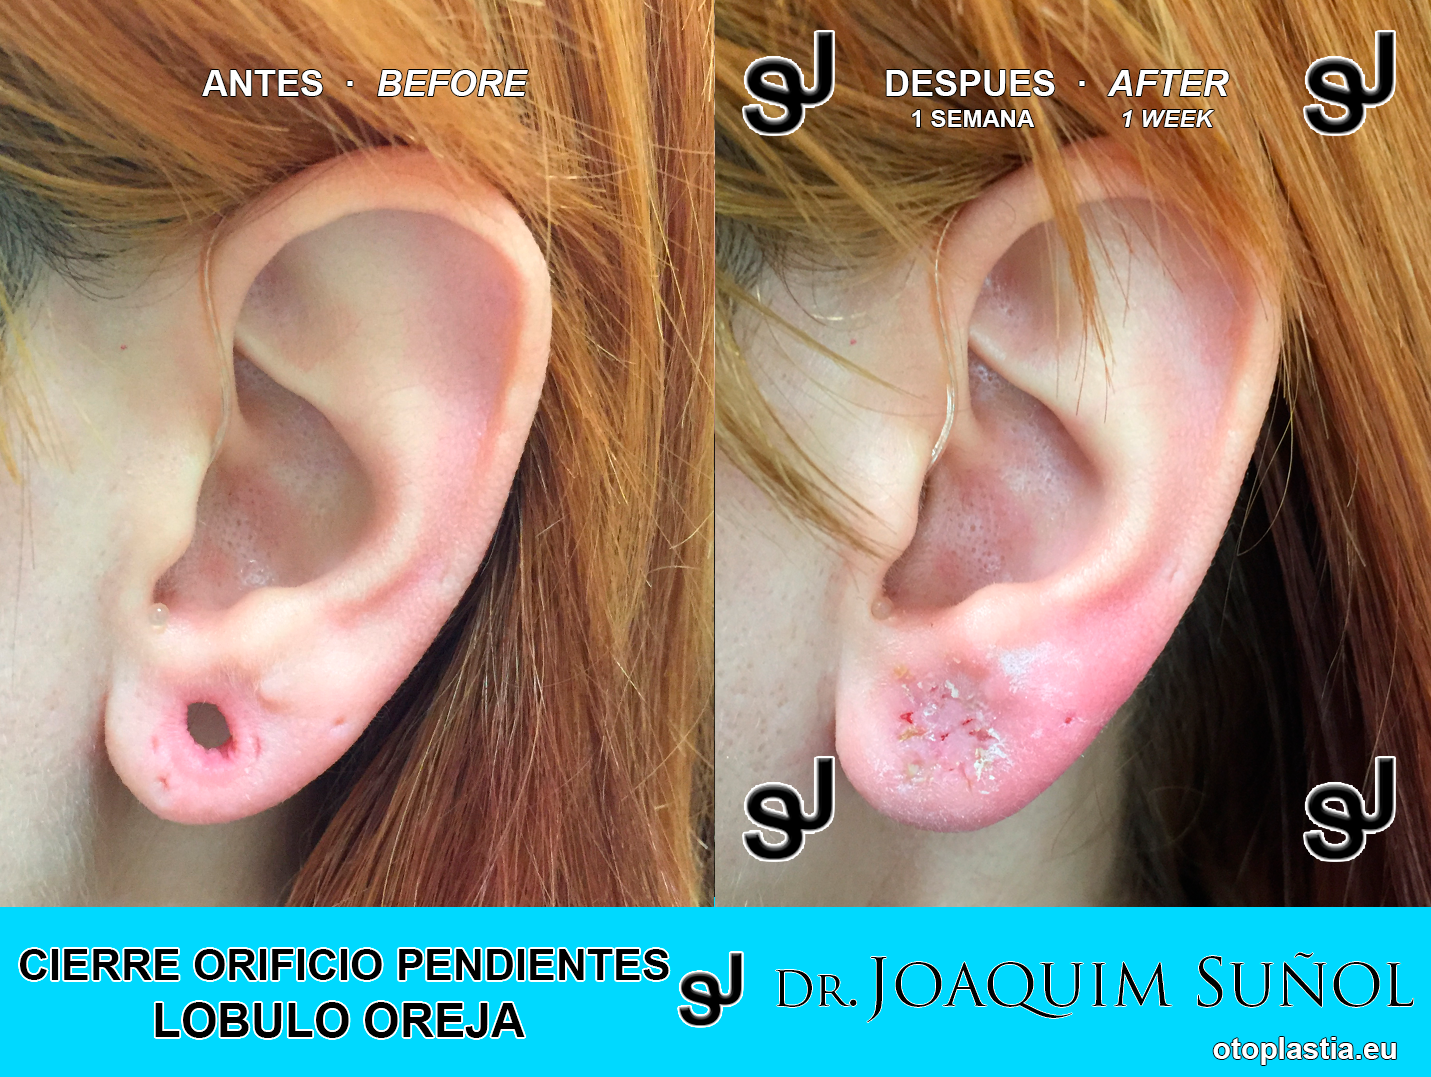 cierre orificios pendientes lobulos de la oreja - Resultados reales de antes y despues